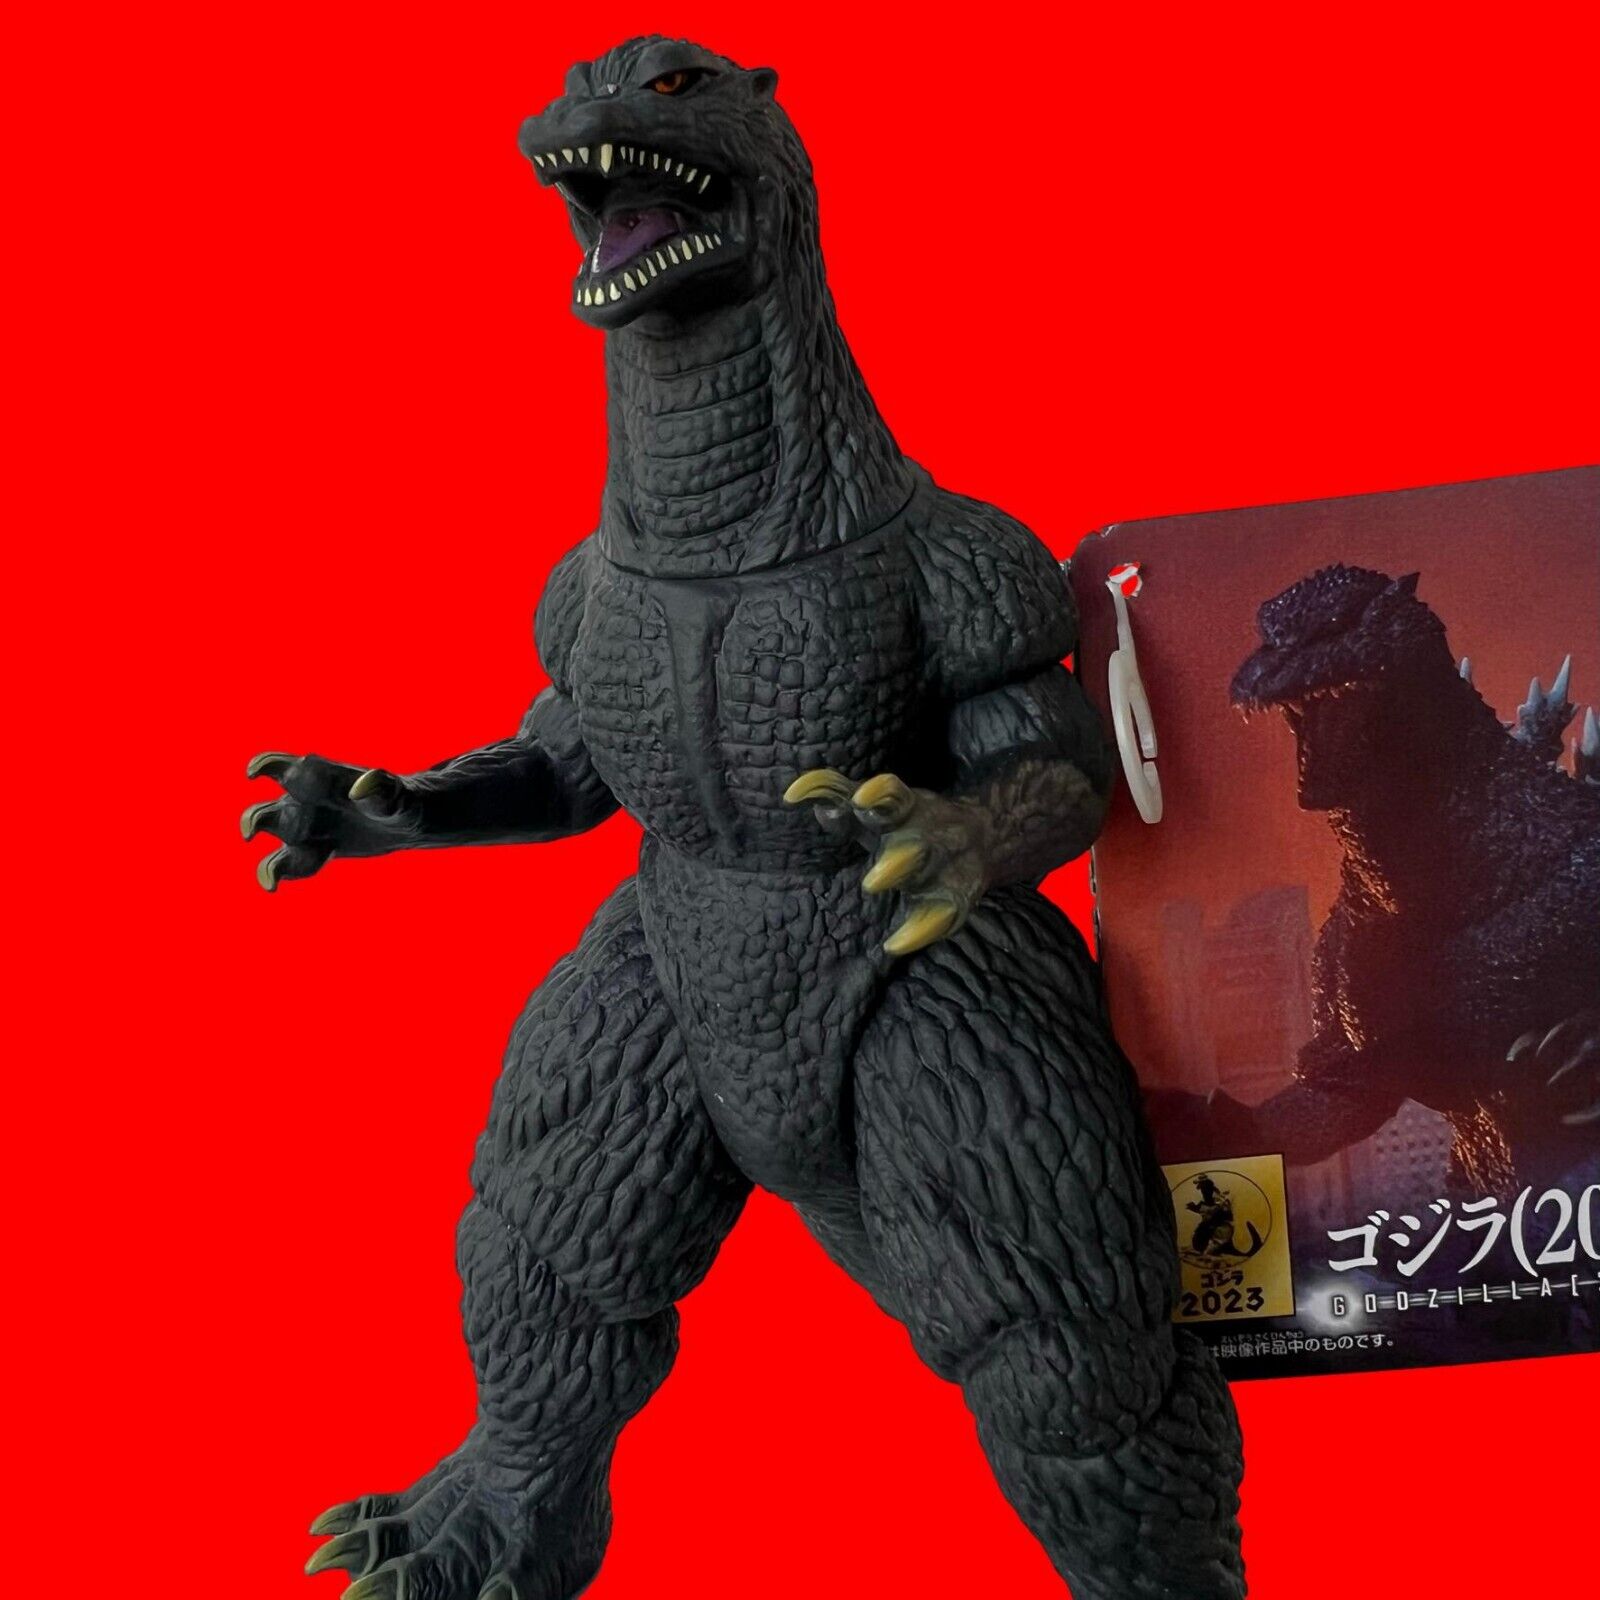 Bandai Godzilla Movie Monster Series Godzilla 2004 Pvc Action Figure Sofvi Toho